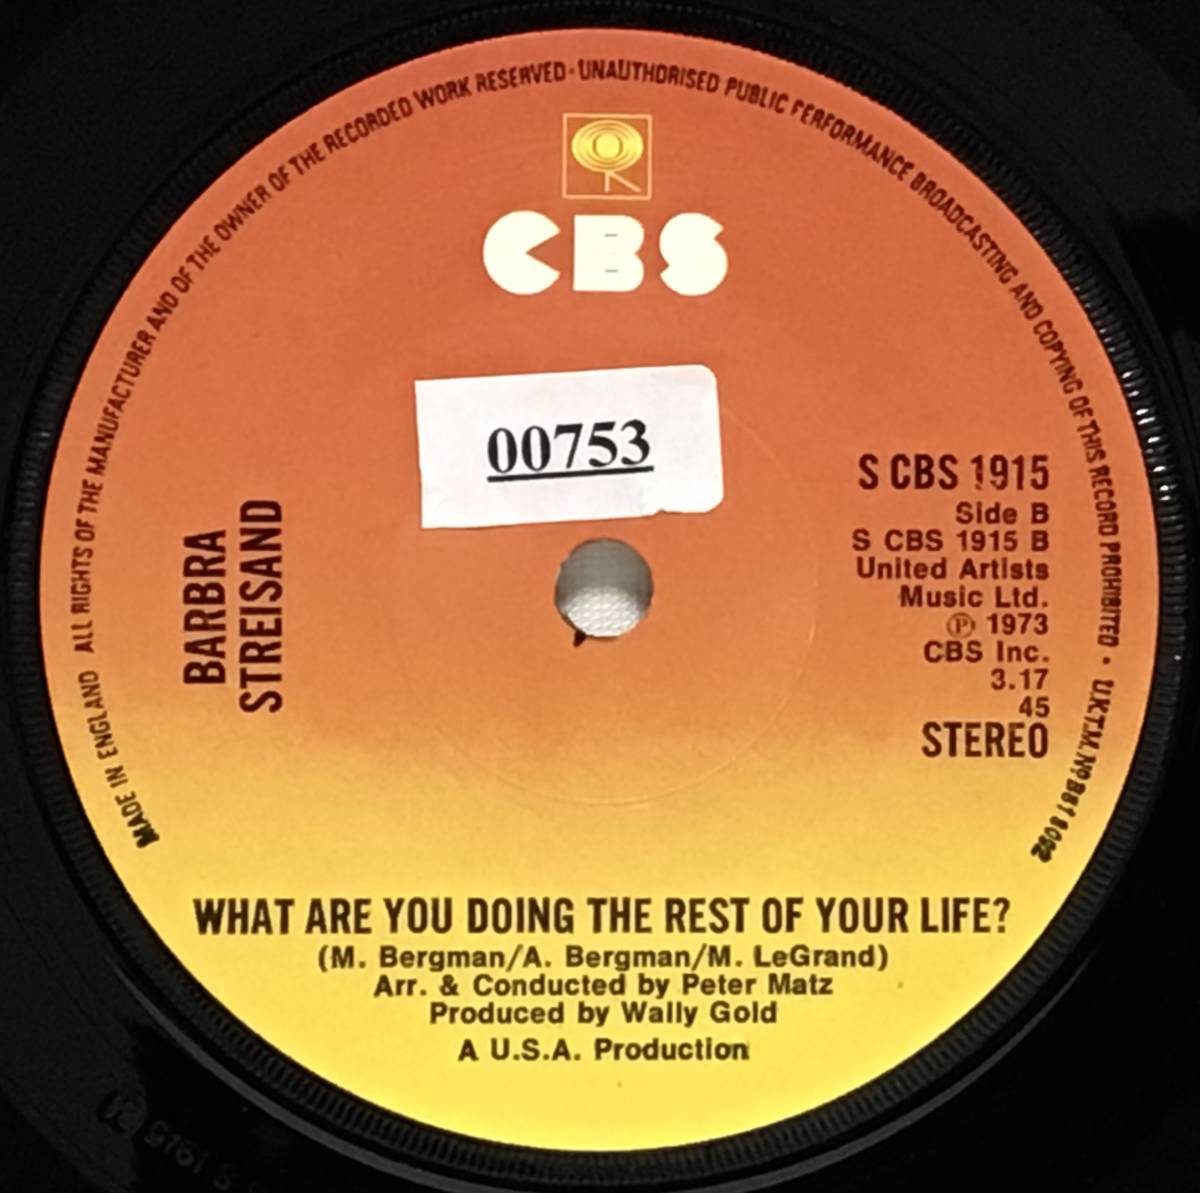 【英7】 BARBRA STREIGHSAND バーブラ・ストライザンド / THE WAY WE WERE 映画 追憶 / 1973 UK盤 7インチシングルレコード EP 45_画像5